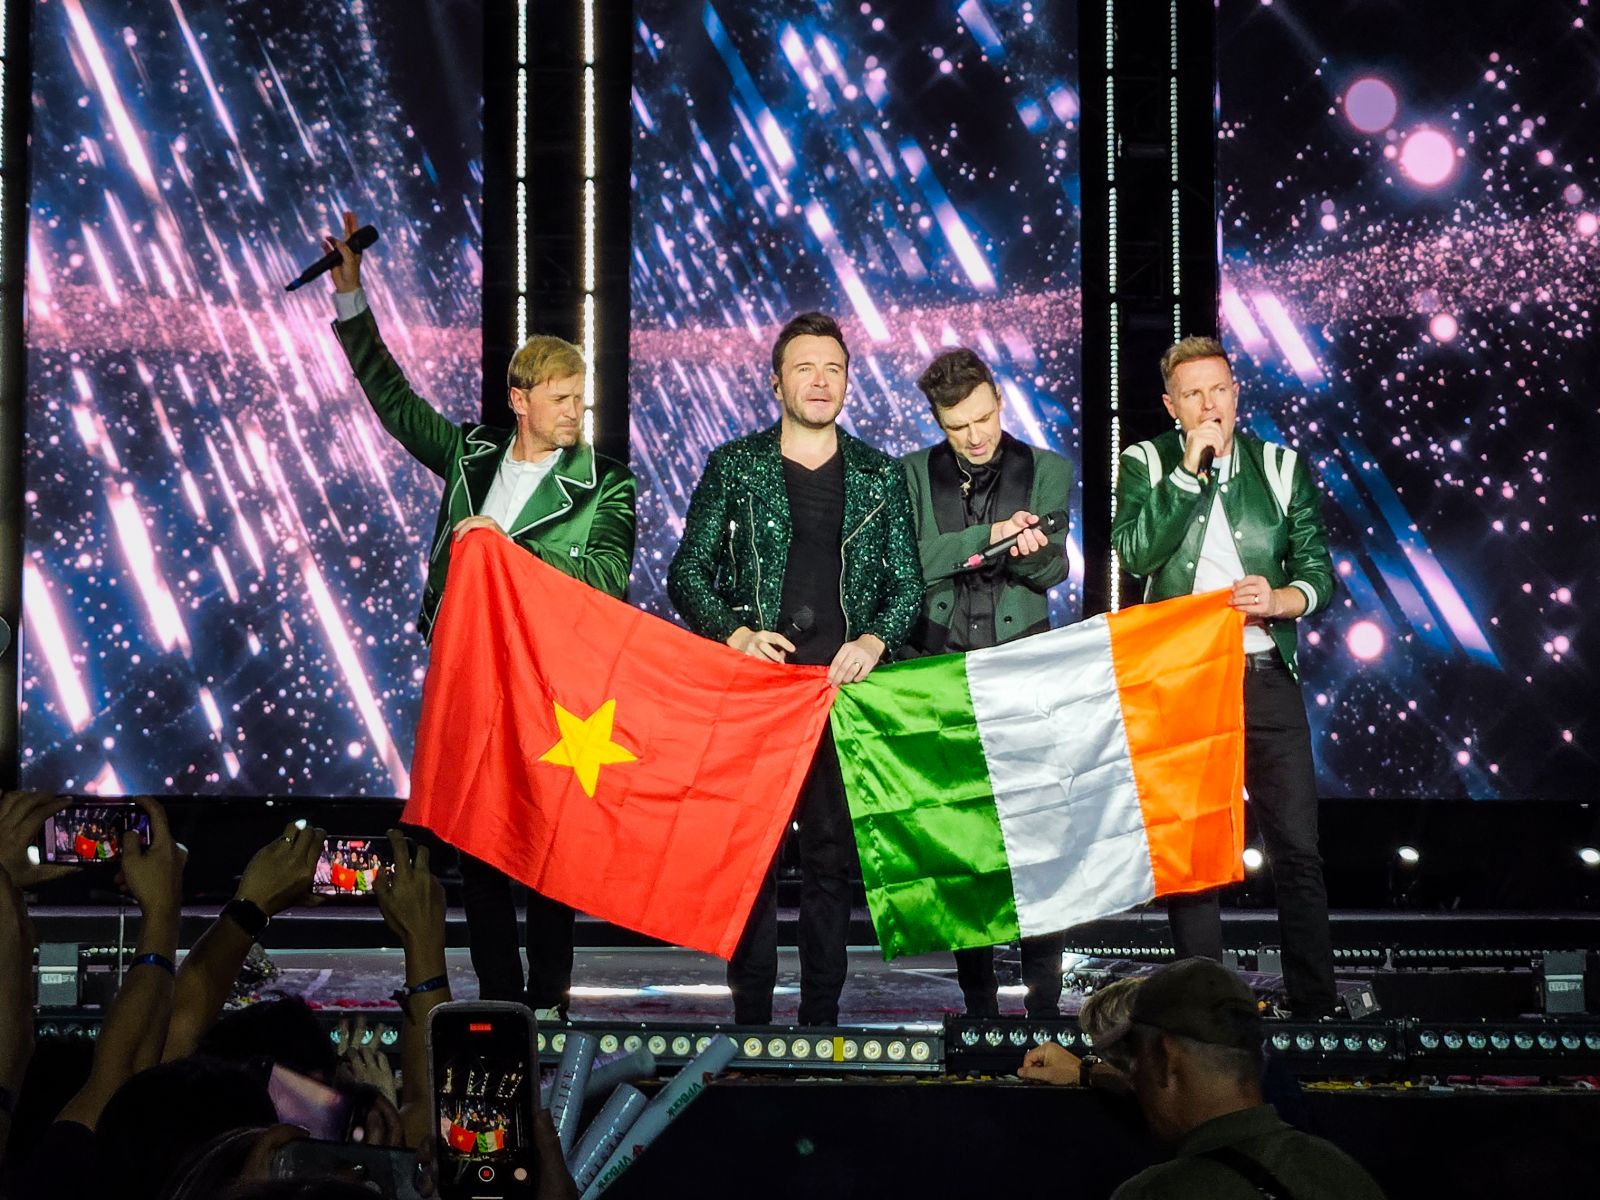 Ban nhạc Westlife trân trọng giương cao lá cờ Việt Nam cùng cờ Ireland và cúi chào khán giả - Ảnh VPBank